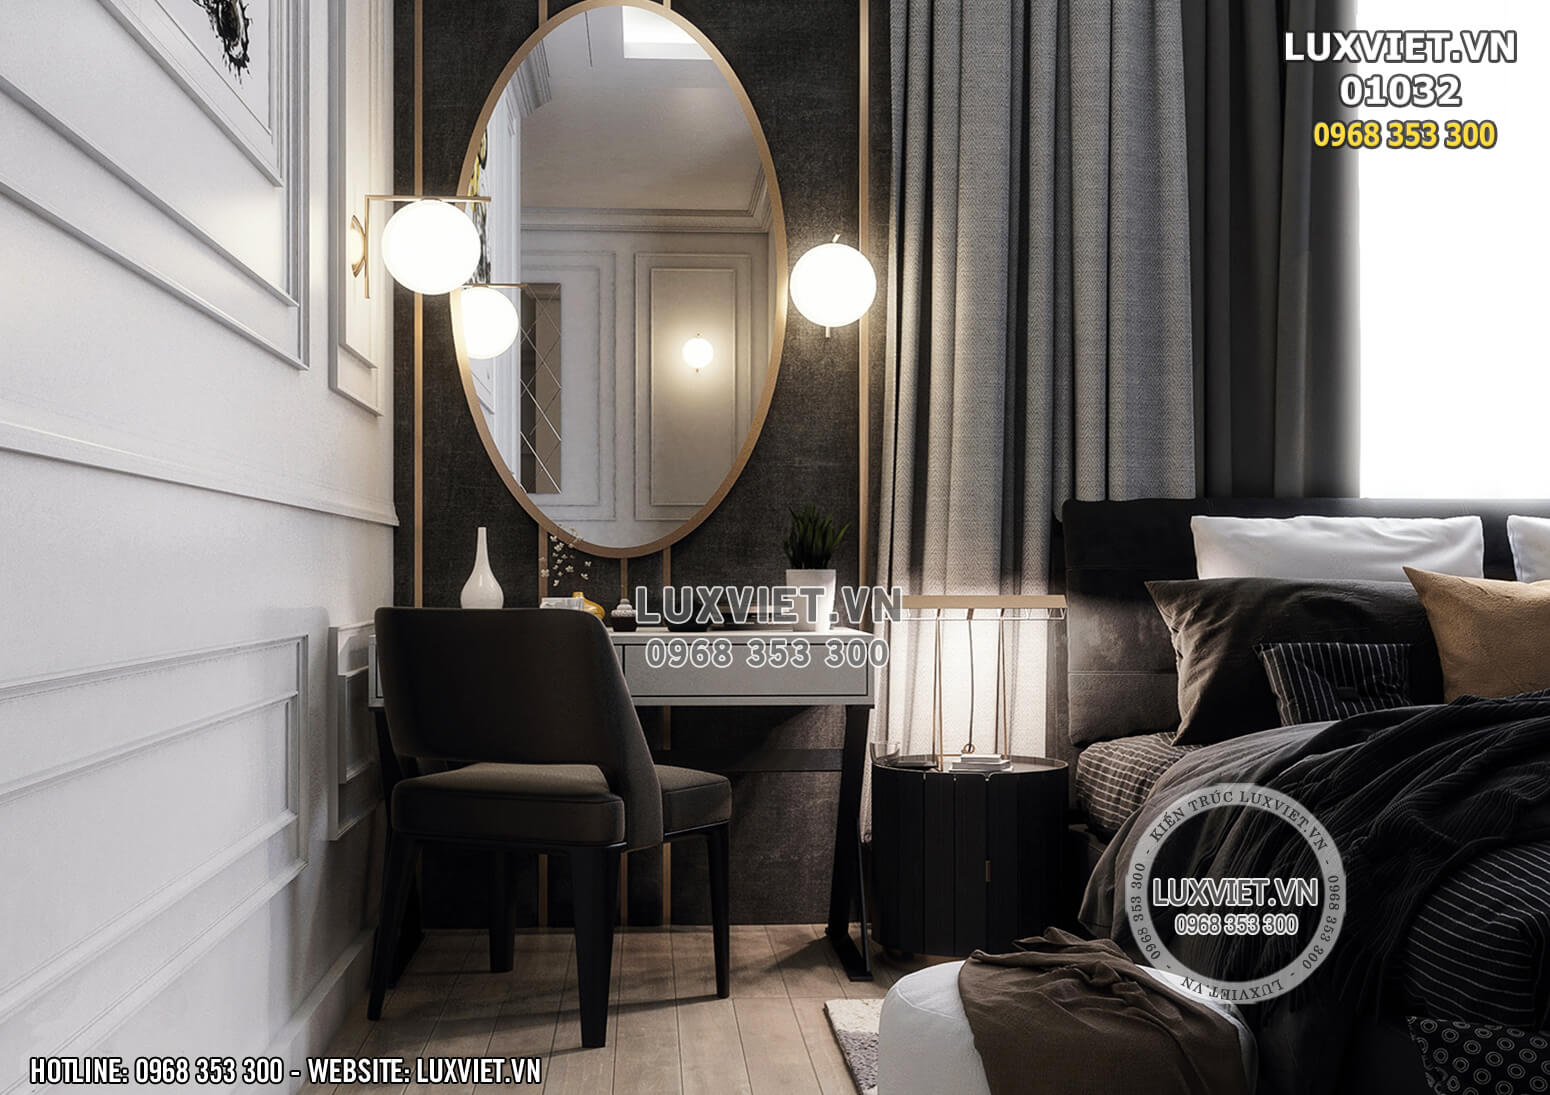 Hình ảnh: Góc bàn trang điểm phong cách nội thất luxury - LV 01032